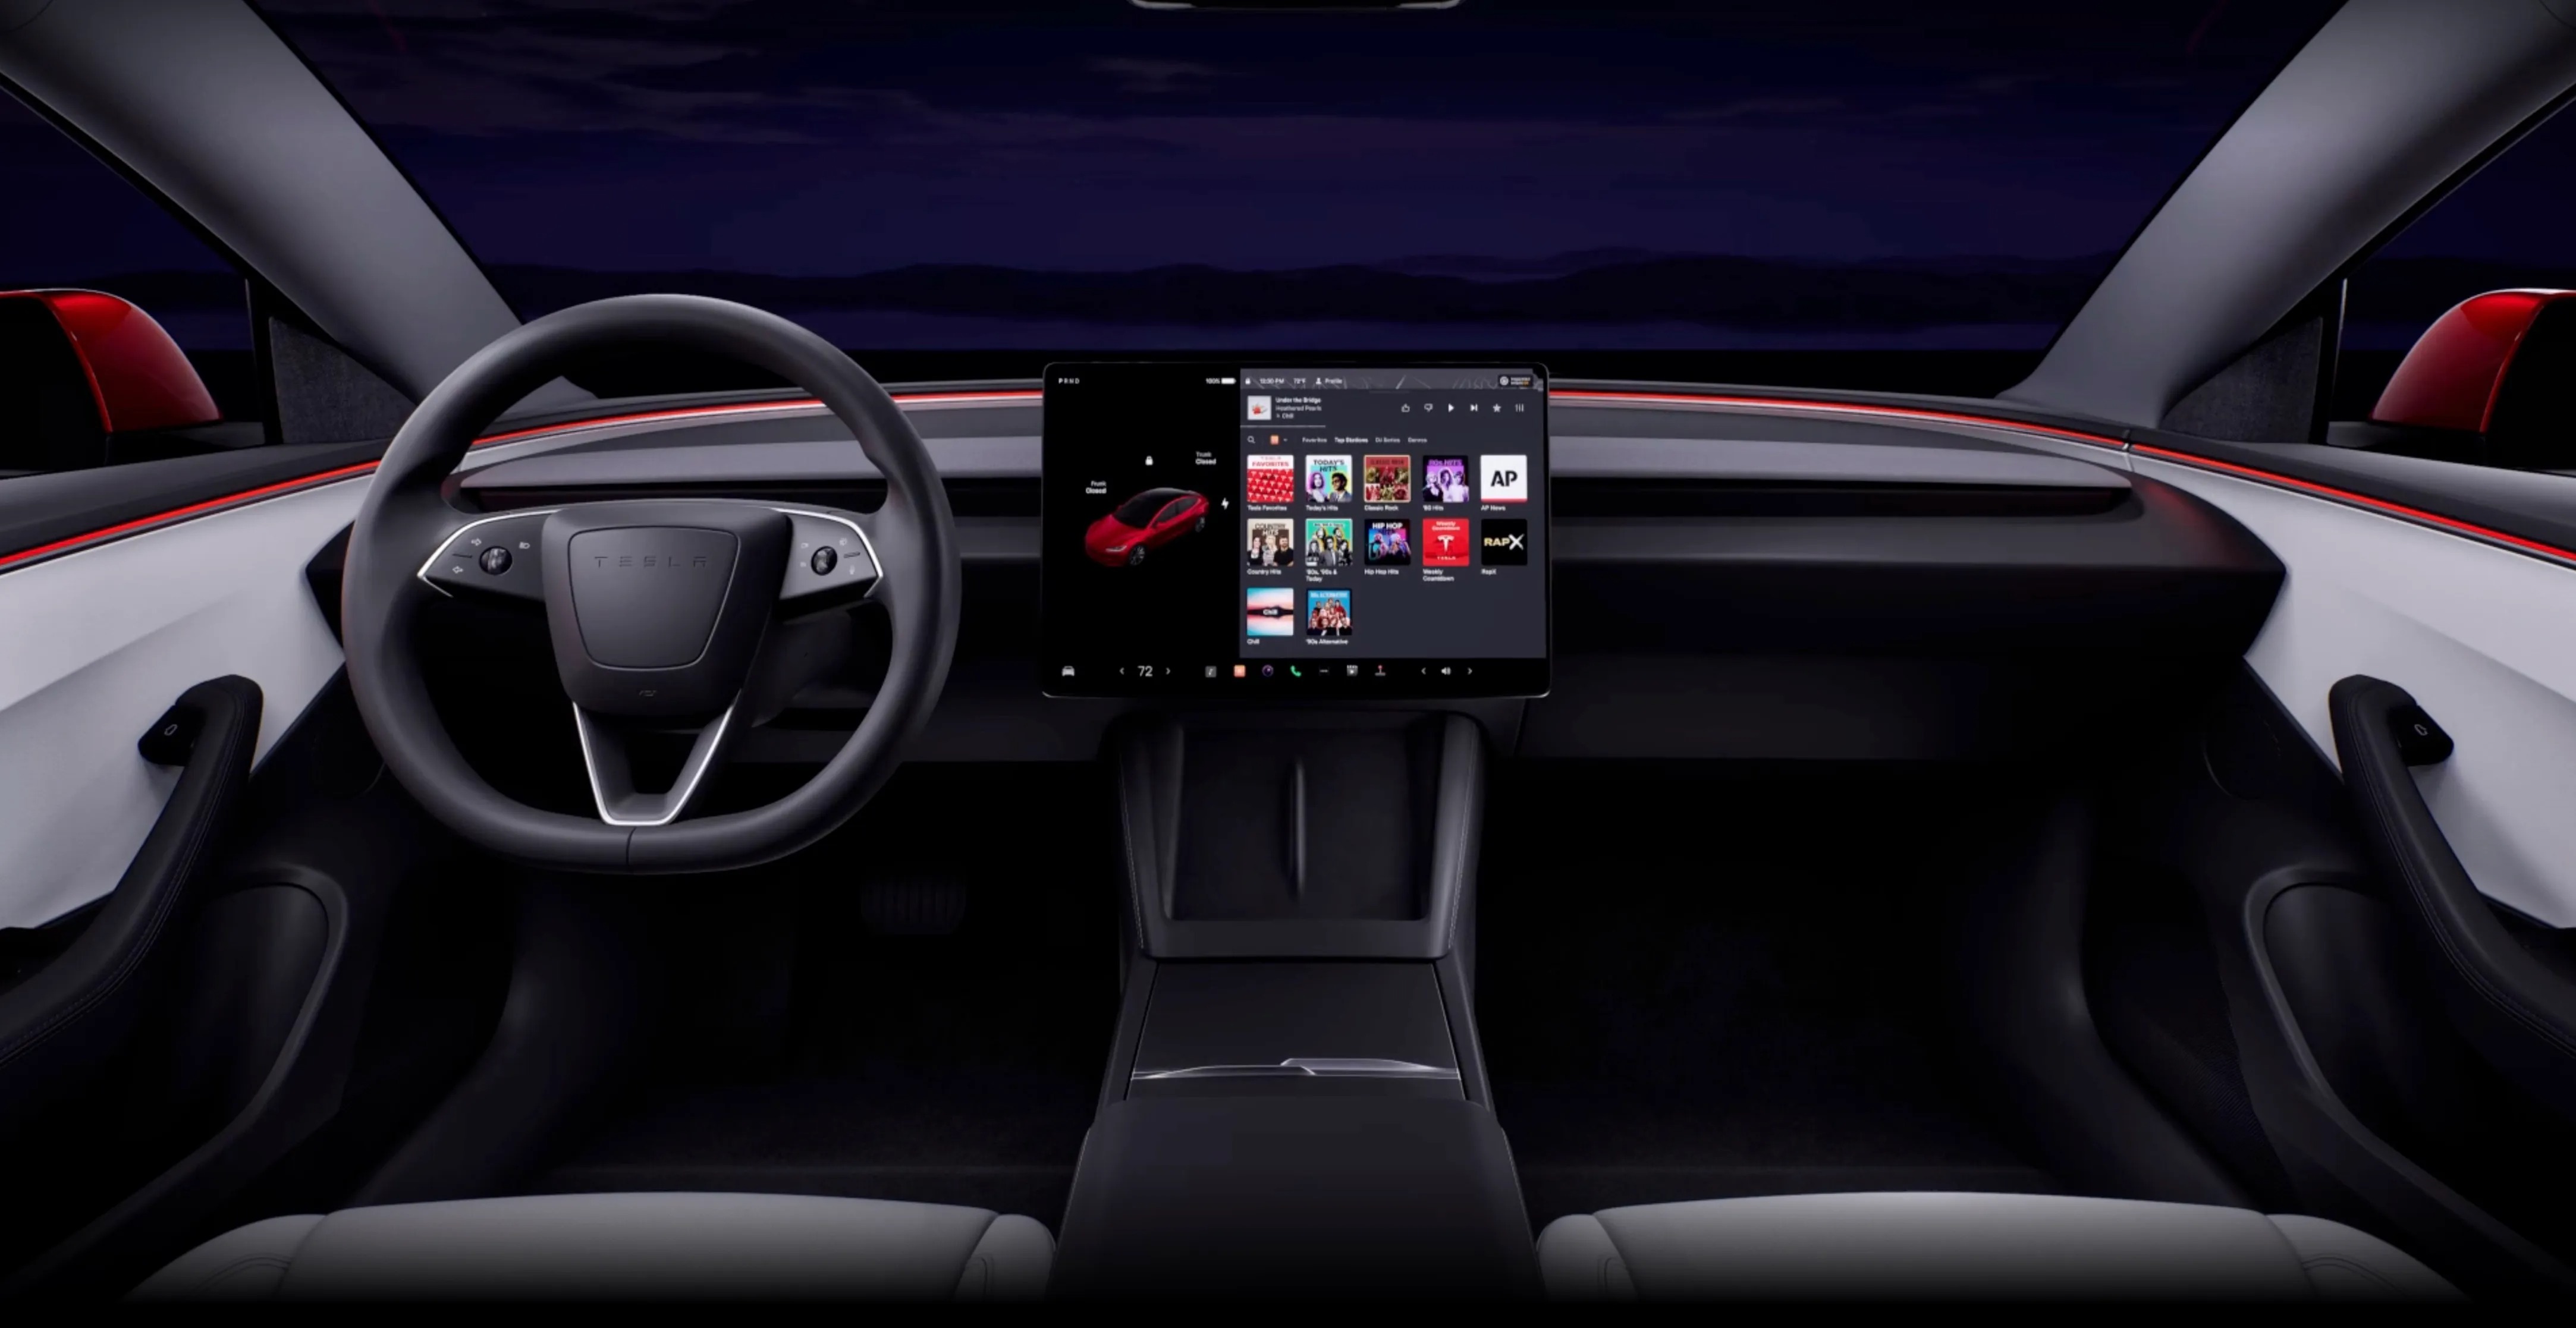 Tesla enthüllt das neue Model 3 mit der ersten großen Überarbeitung seit  Jahren